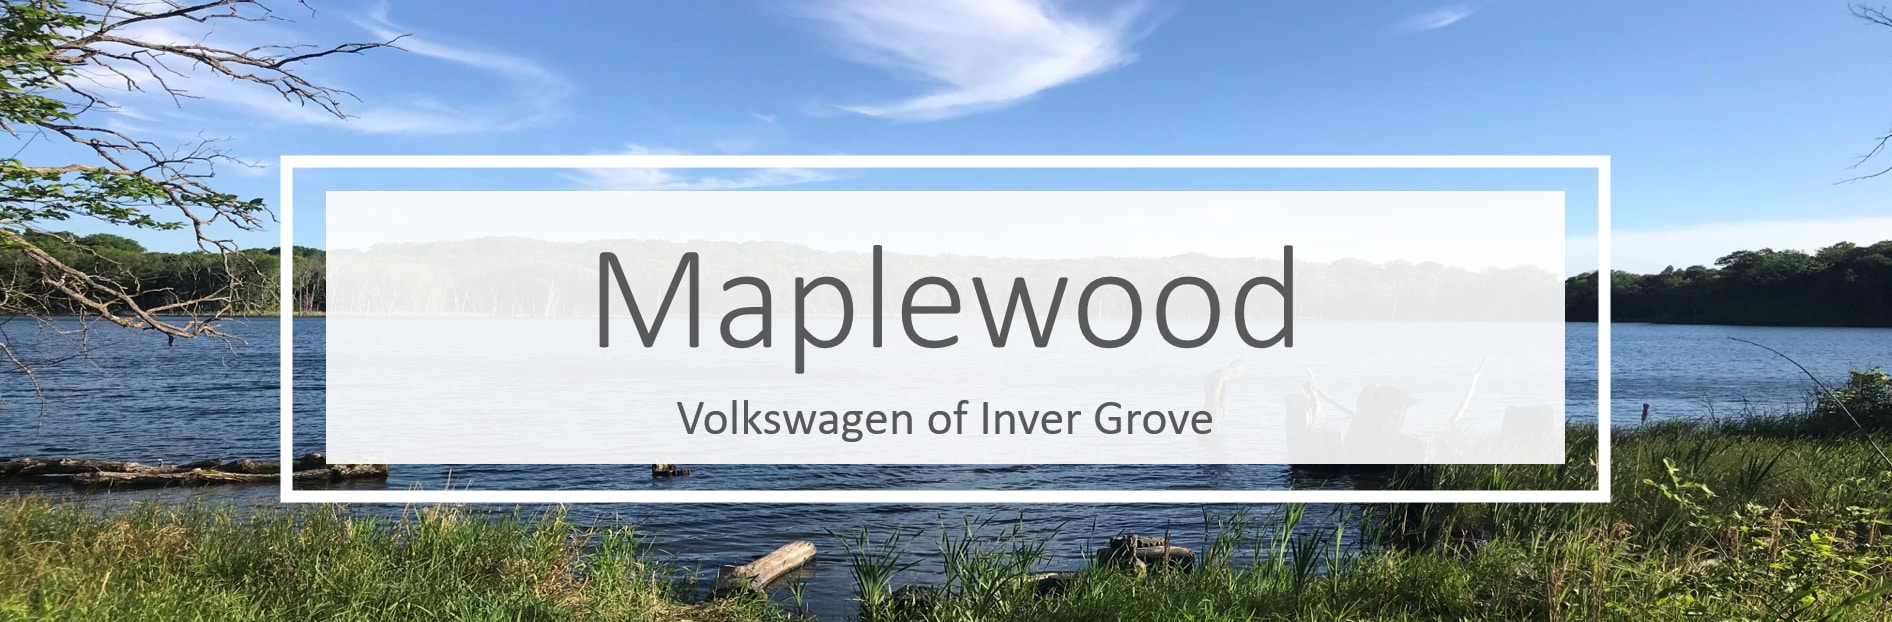 Volkswagen dealership near Maplewood